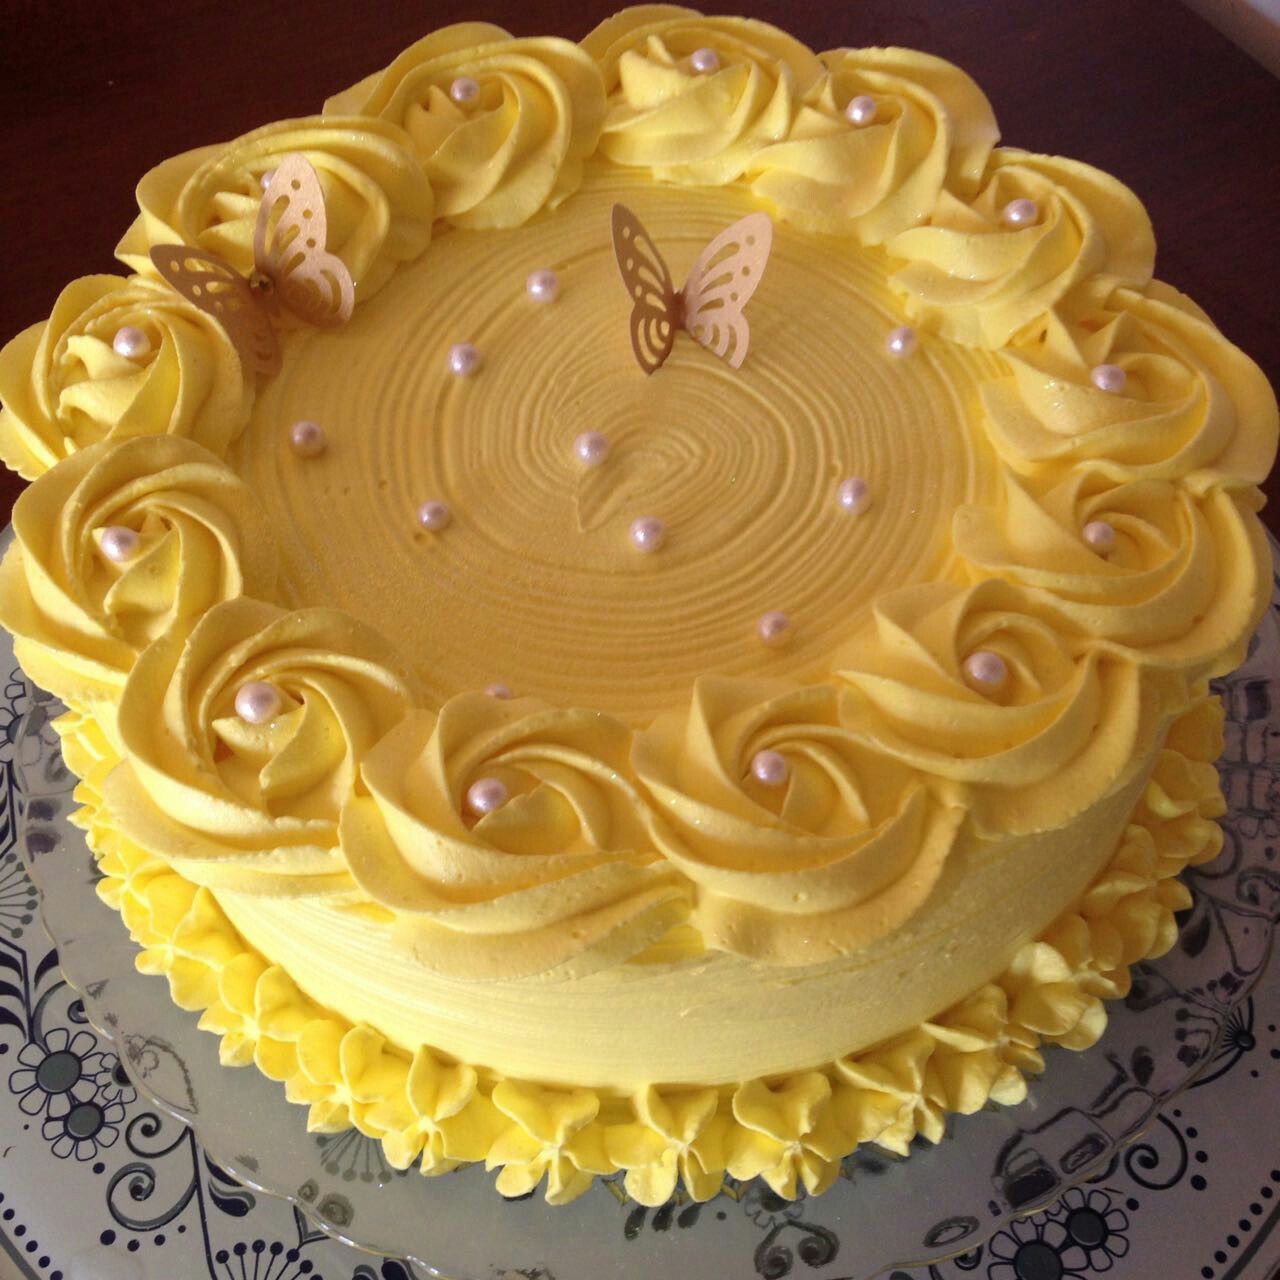 Как украсить масляным кремом торт: Оформление торта масляным кремом (35 фото)